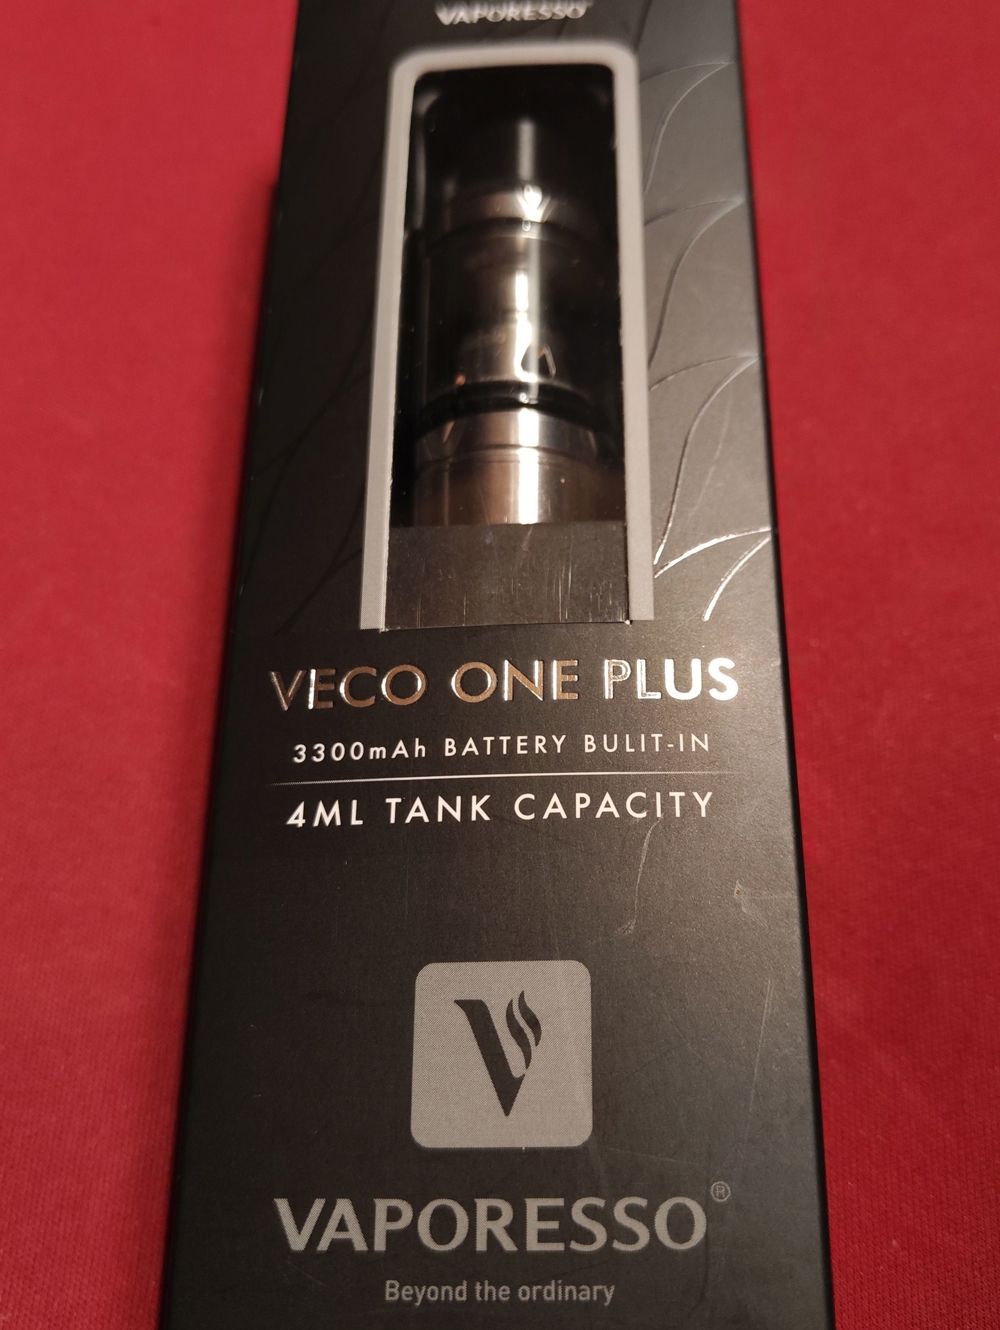 E-Zigarette Vaporesso Veco One Plus + 2x Eco